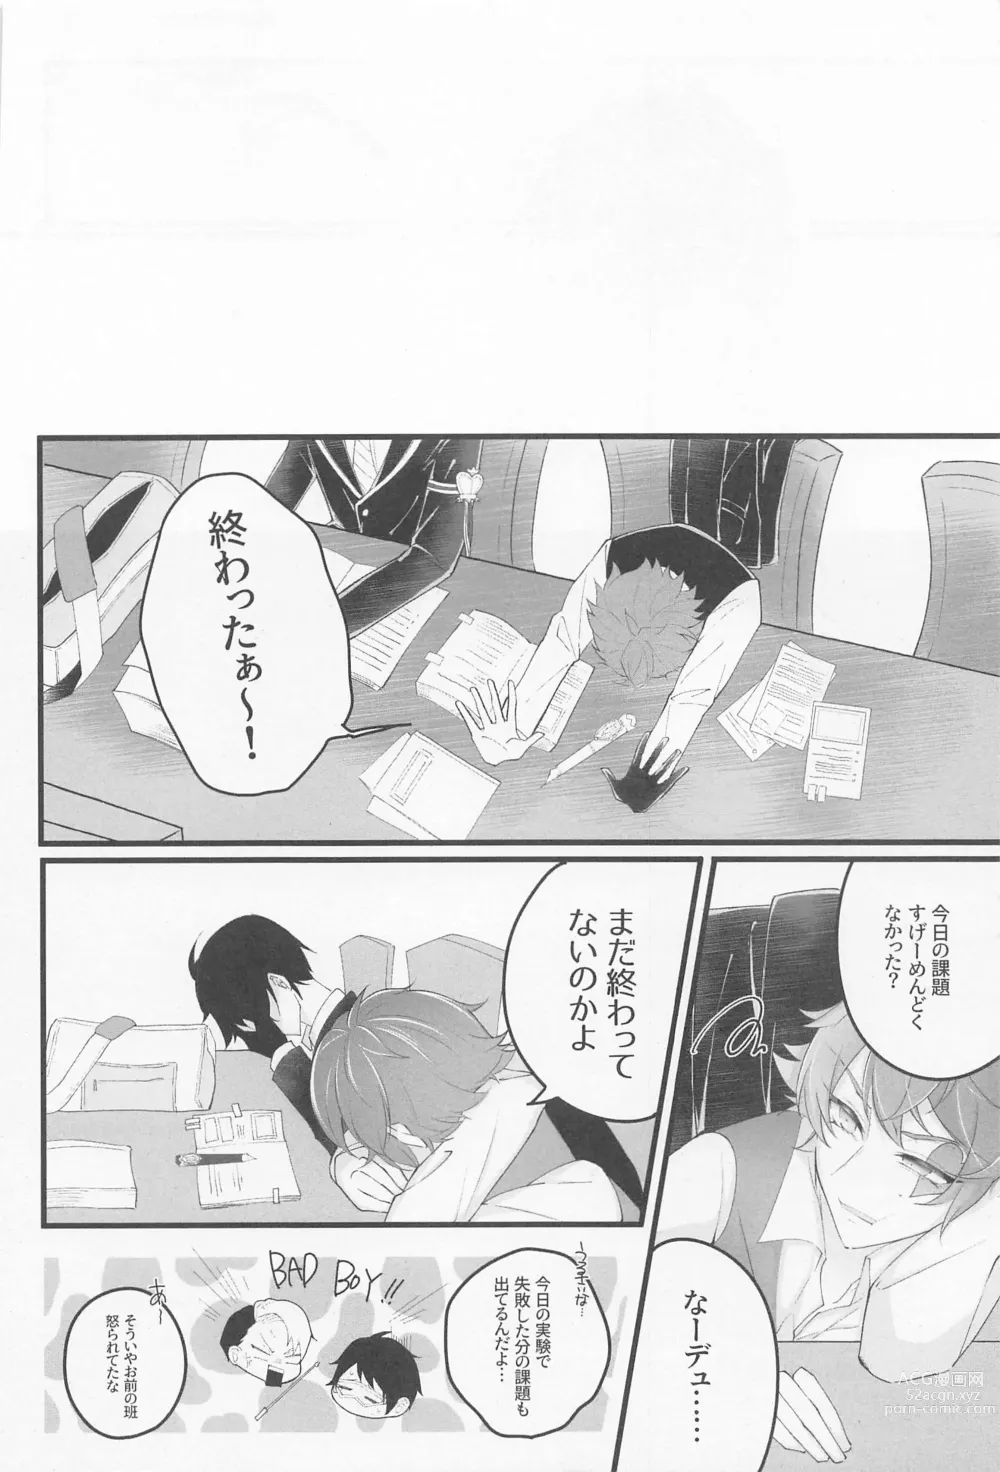 Page 5 of doujinshi No use crying.